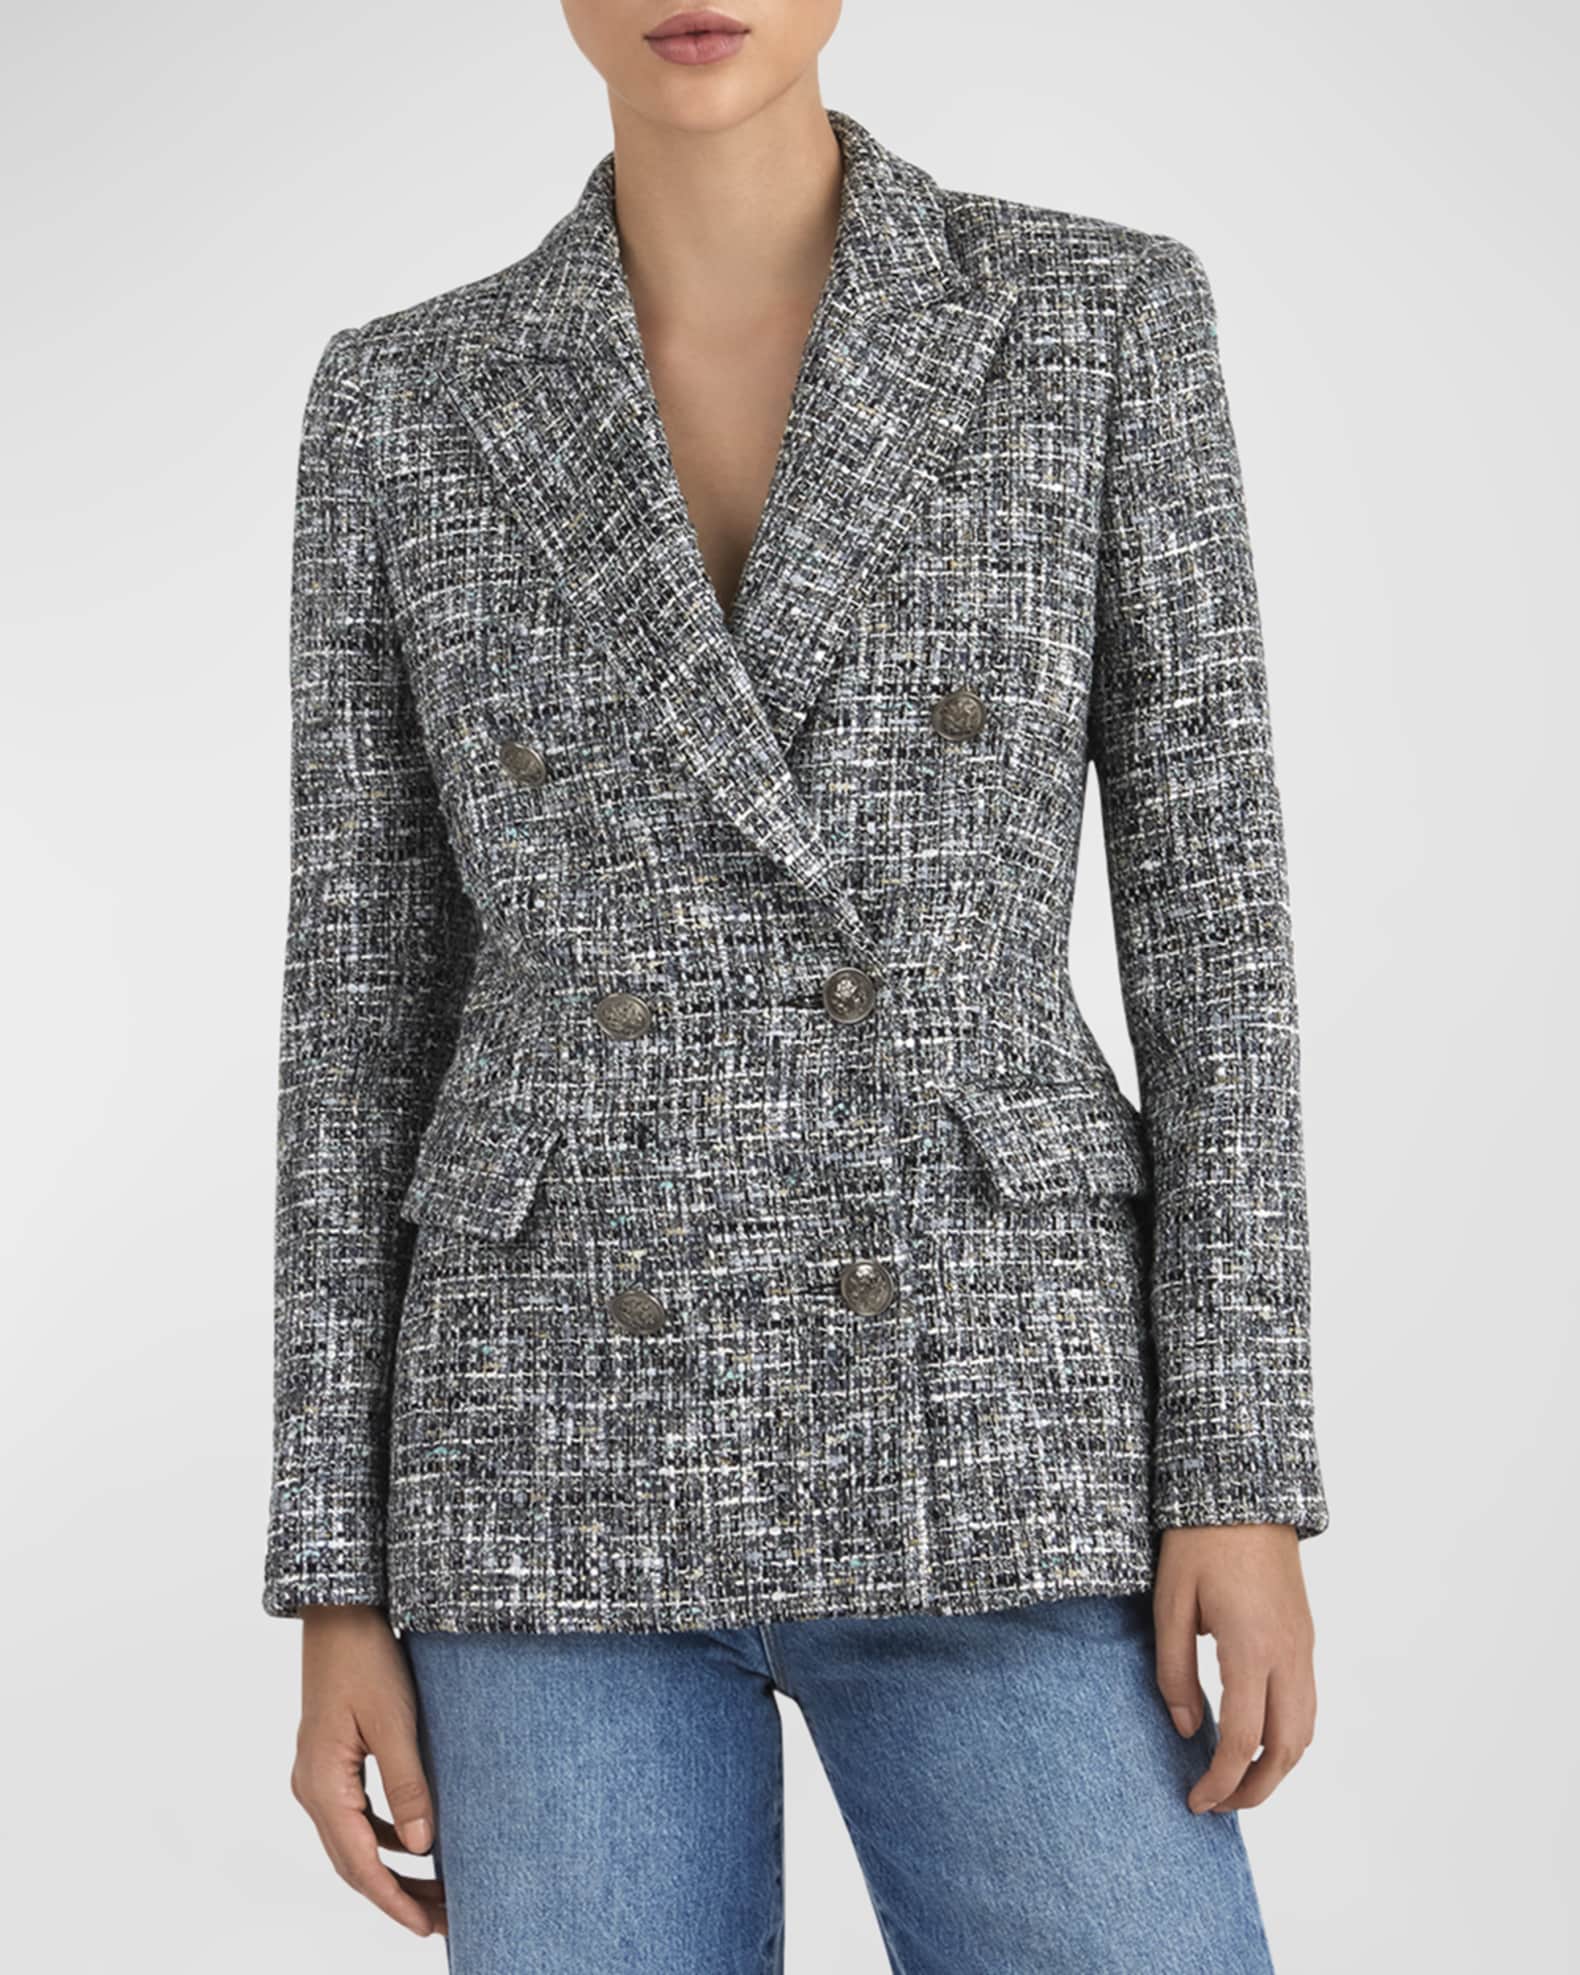 WINTAGE Men's Tweed Casual and Festive Blazer Coat Jacket: Grey Grey / 40 / Medium